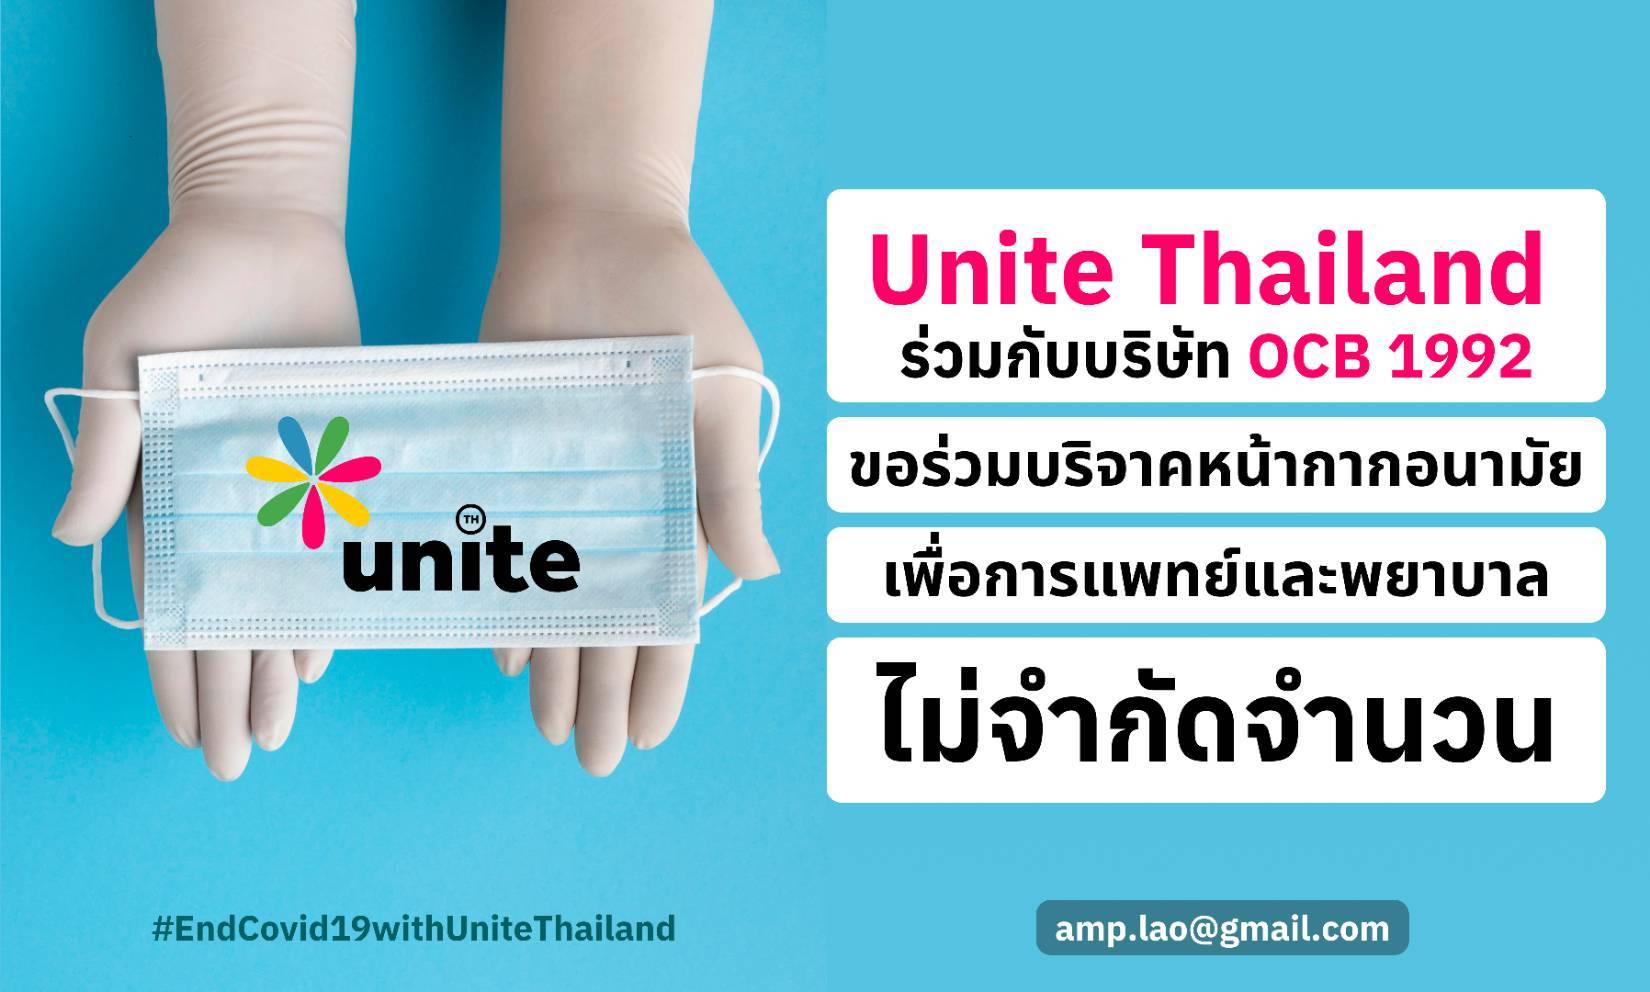 ข่าวโควิด-19 - กลุ่ม unite Thailand เชิญร่วมบริจาคหน้ากากอนามัย ไม่จำกัดจำนวน เพื่อแพทย์และพยาบาล